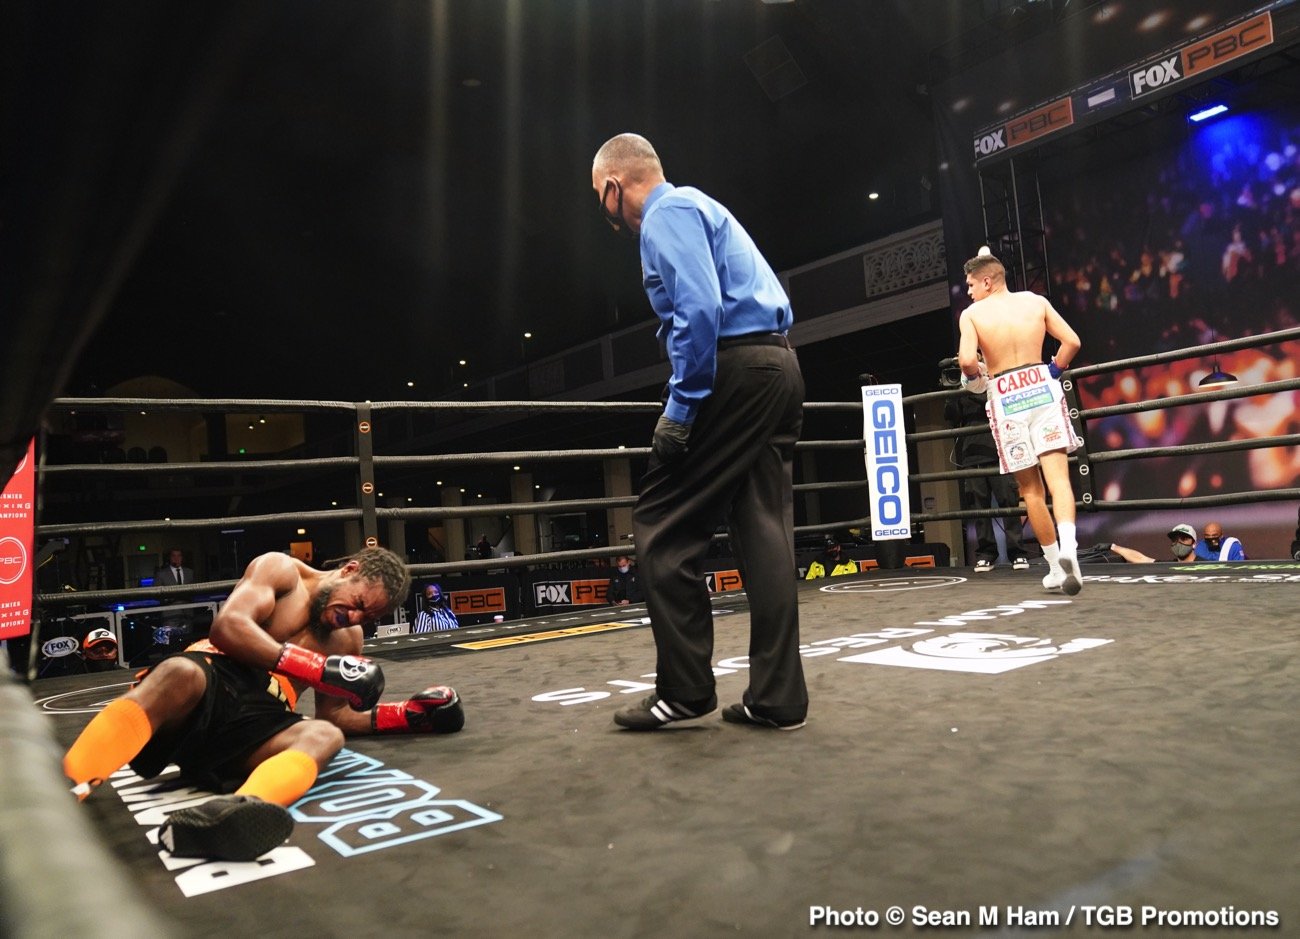 David O. Morrell destroys Gavronski, James Kirkland with KO Loss - Boxing Results